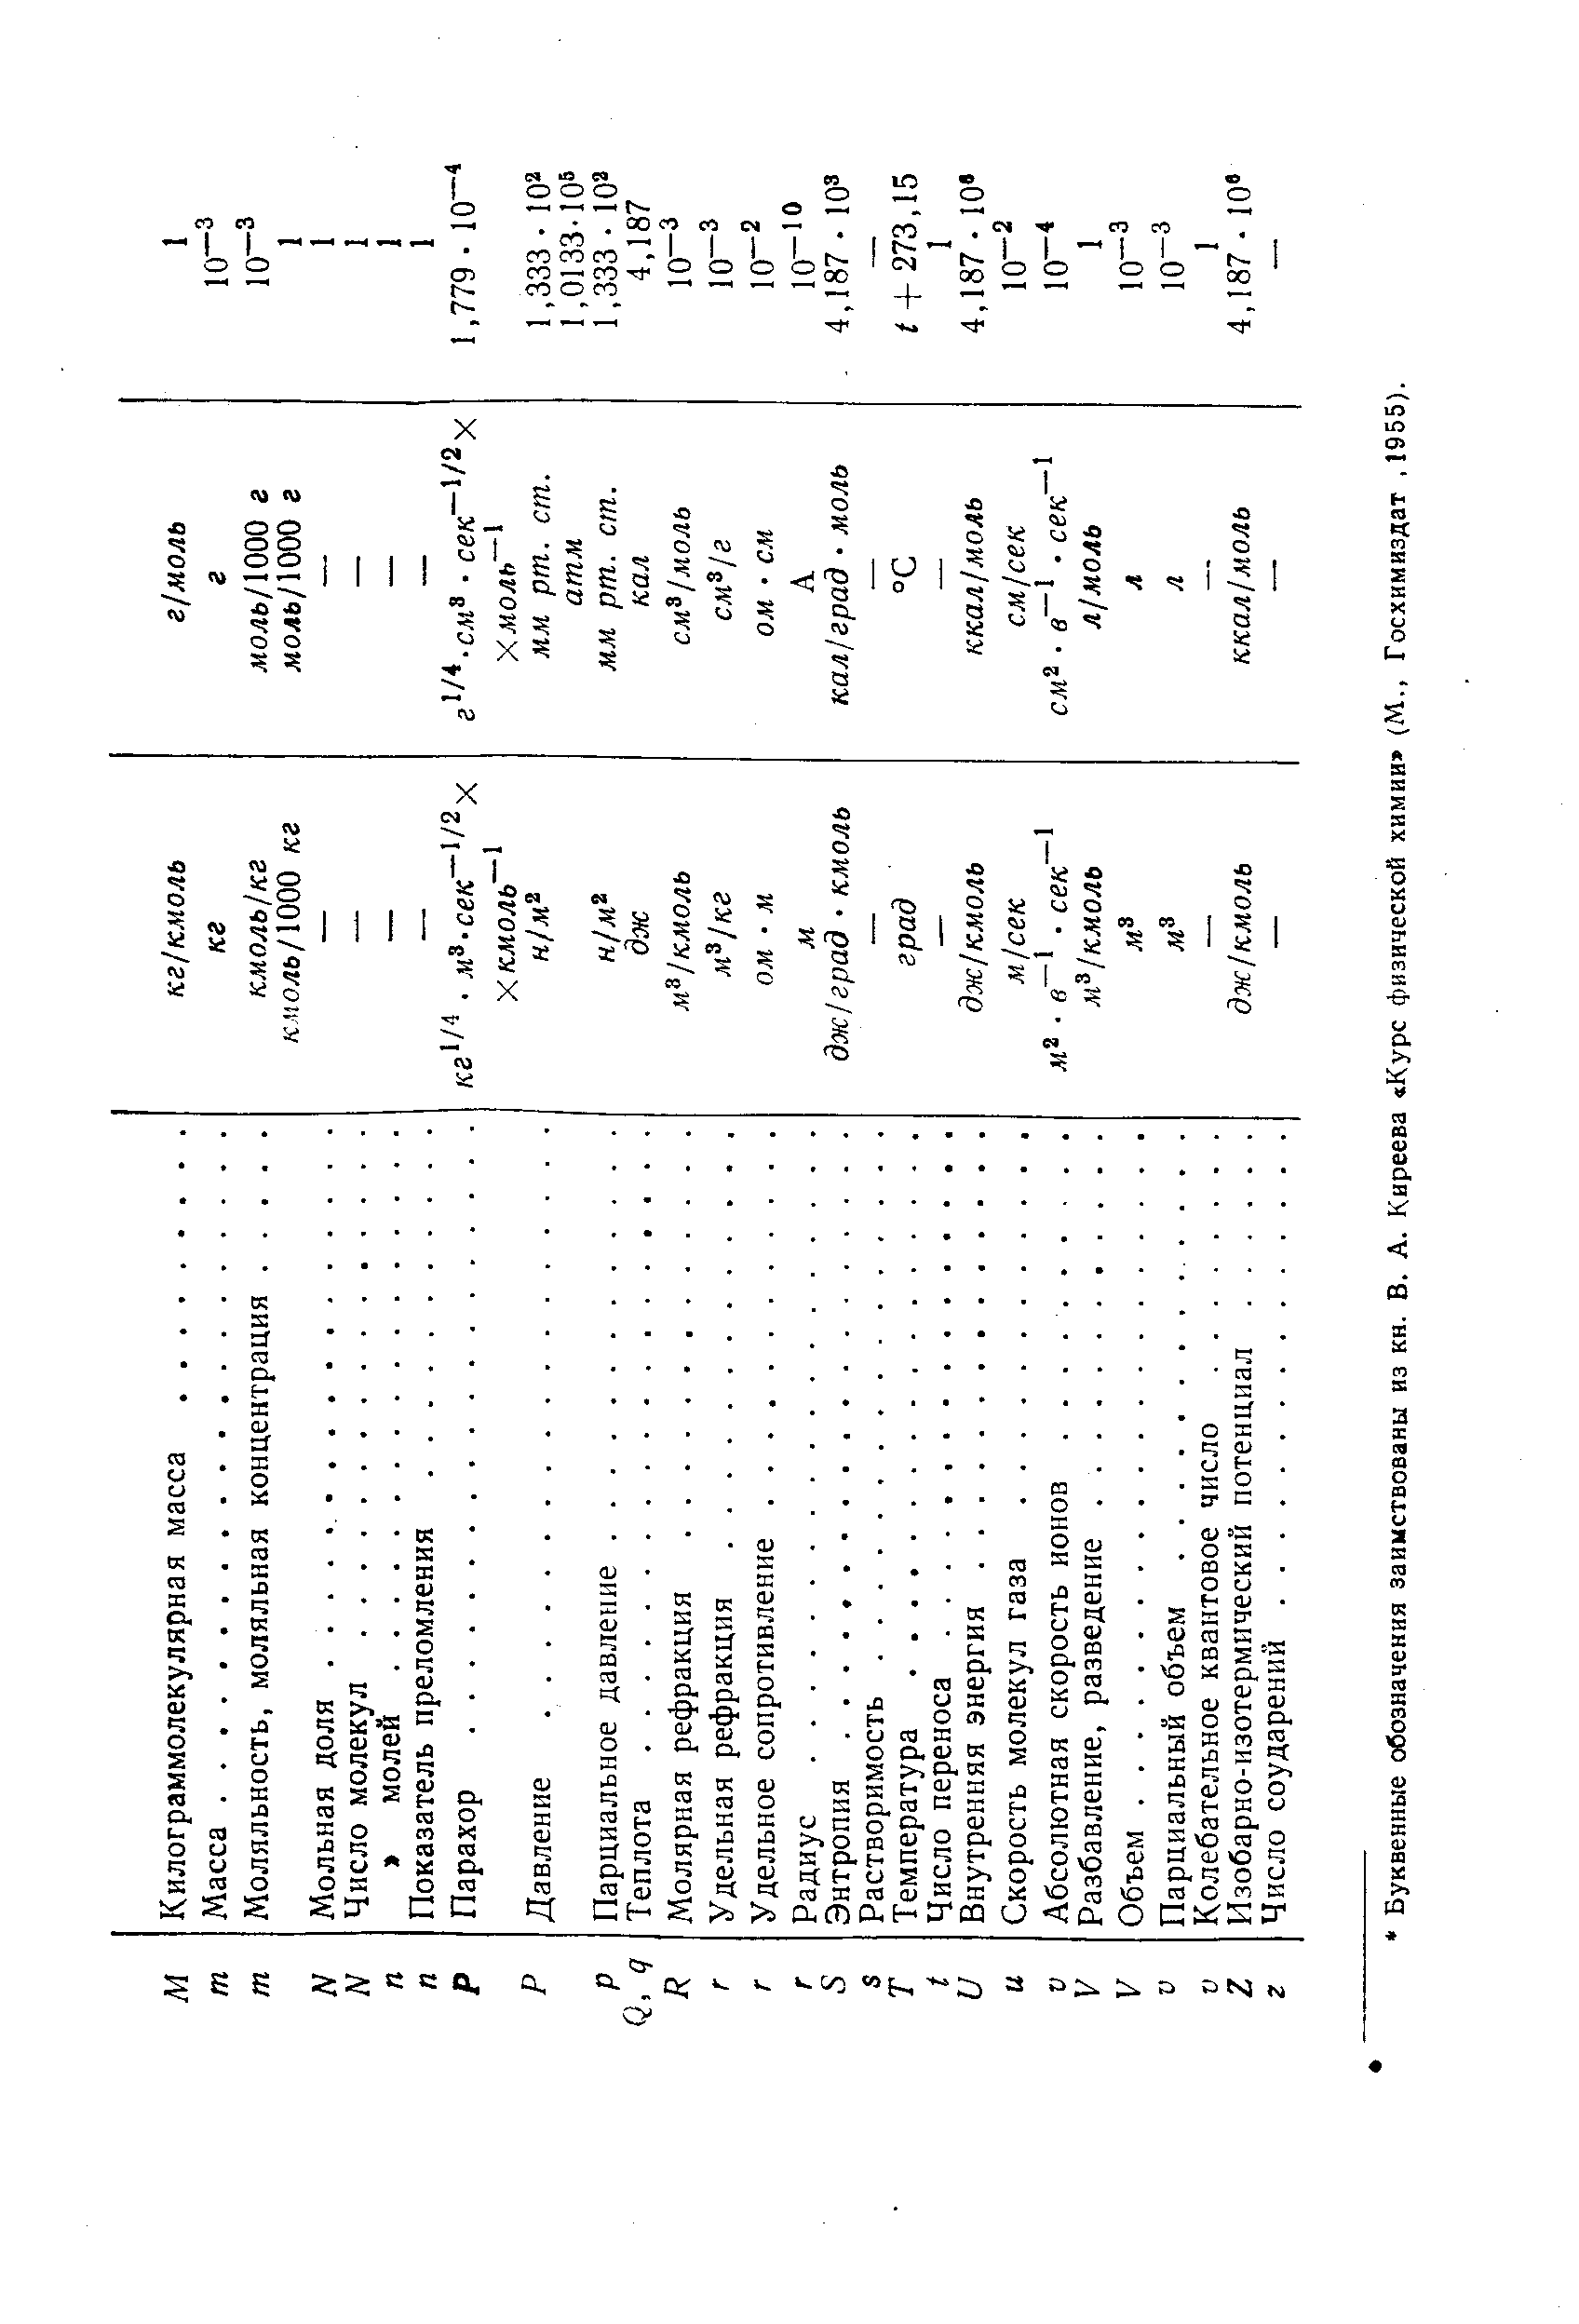 Буквенные обозначения заимствованы из кн. Б. А. Киреева Курс физической химии (М., Госхимиздат, 1955).